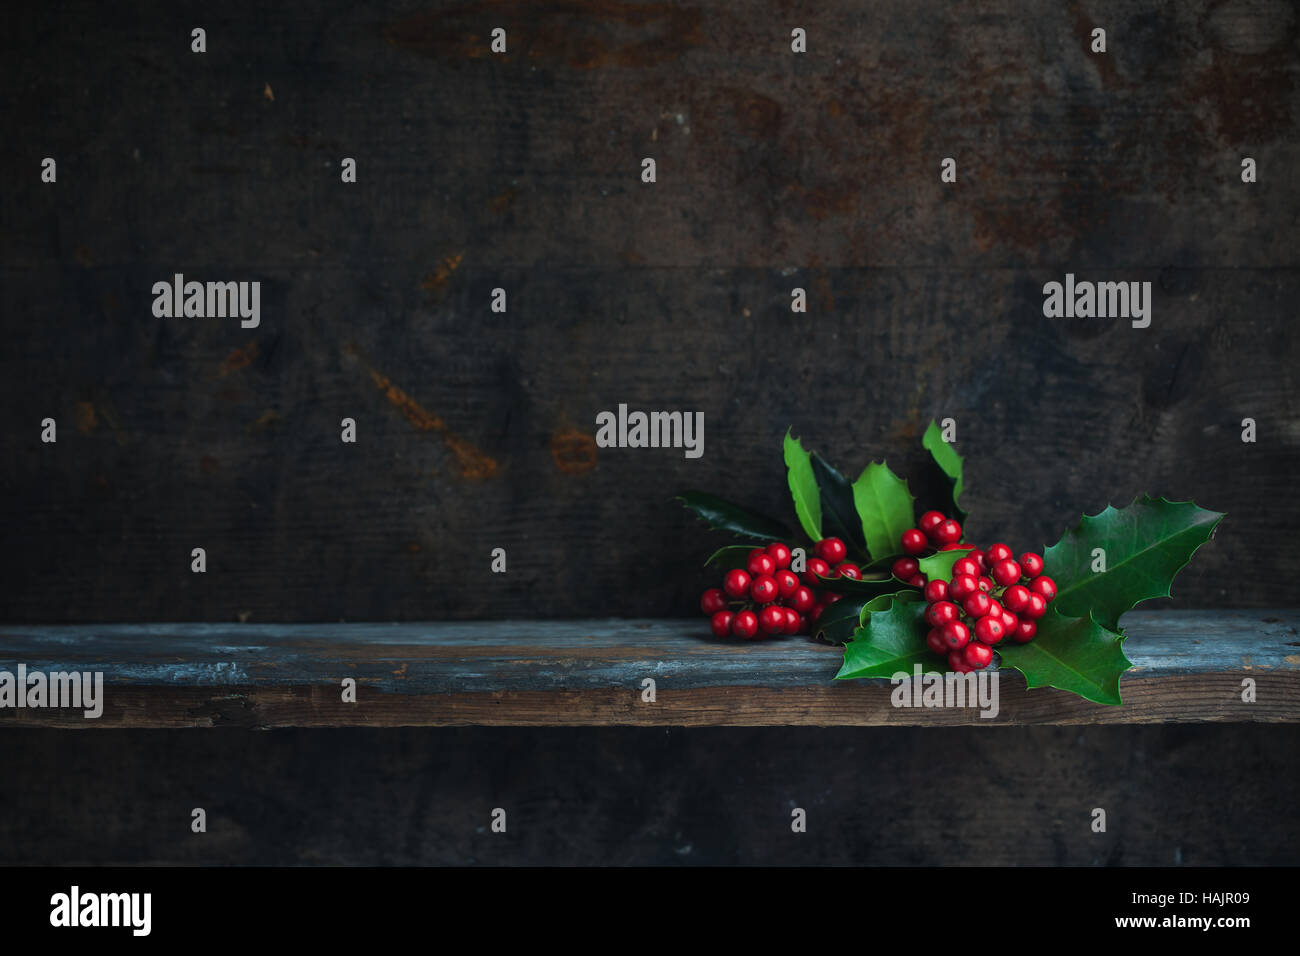 Natale Holly ramoscello. Decorazione di natale con bacche rosse poste su un ripiano di legno. Foto Stock